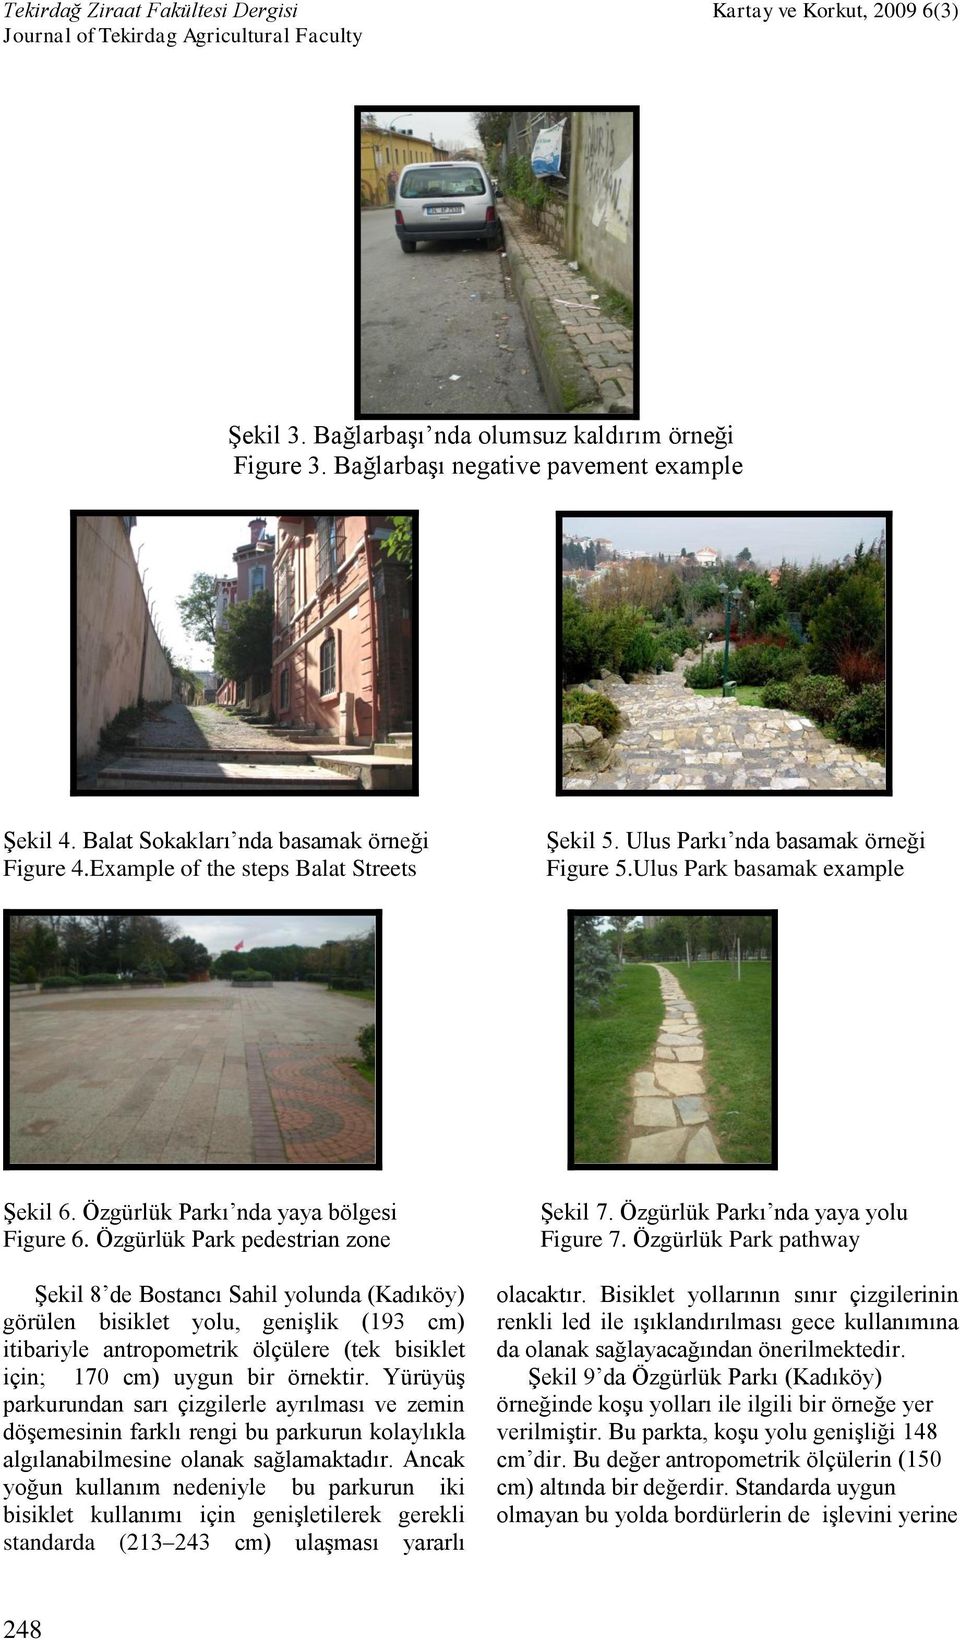 Özgürlük Park pedestrian zone Şekil 8 de Bostancı Sahil yolunda (Kadıköy) görülen bisiklet yolu, genişlik (193 cm) itibariyle antropometrik ölçülere (tek bisiklet için; 170 cm) uygun bir örnektir.